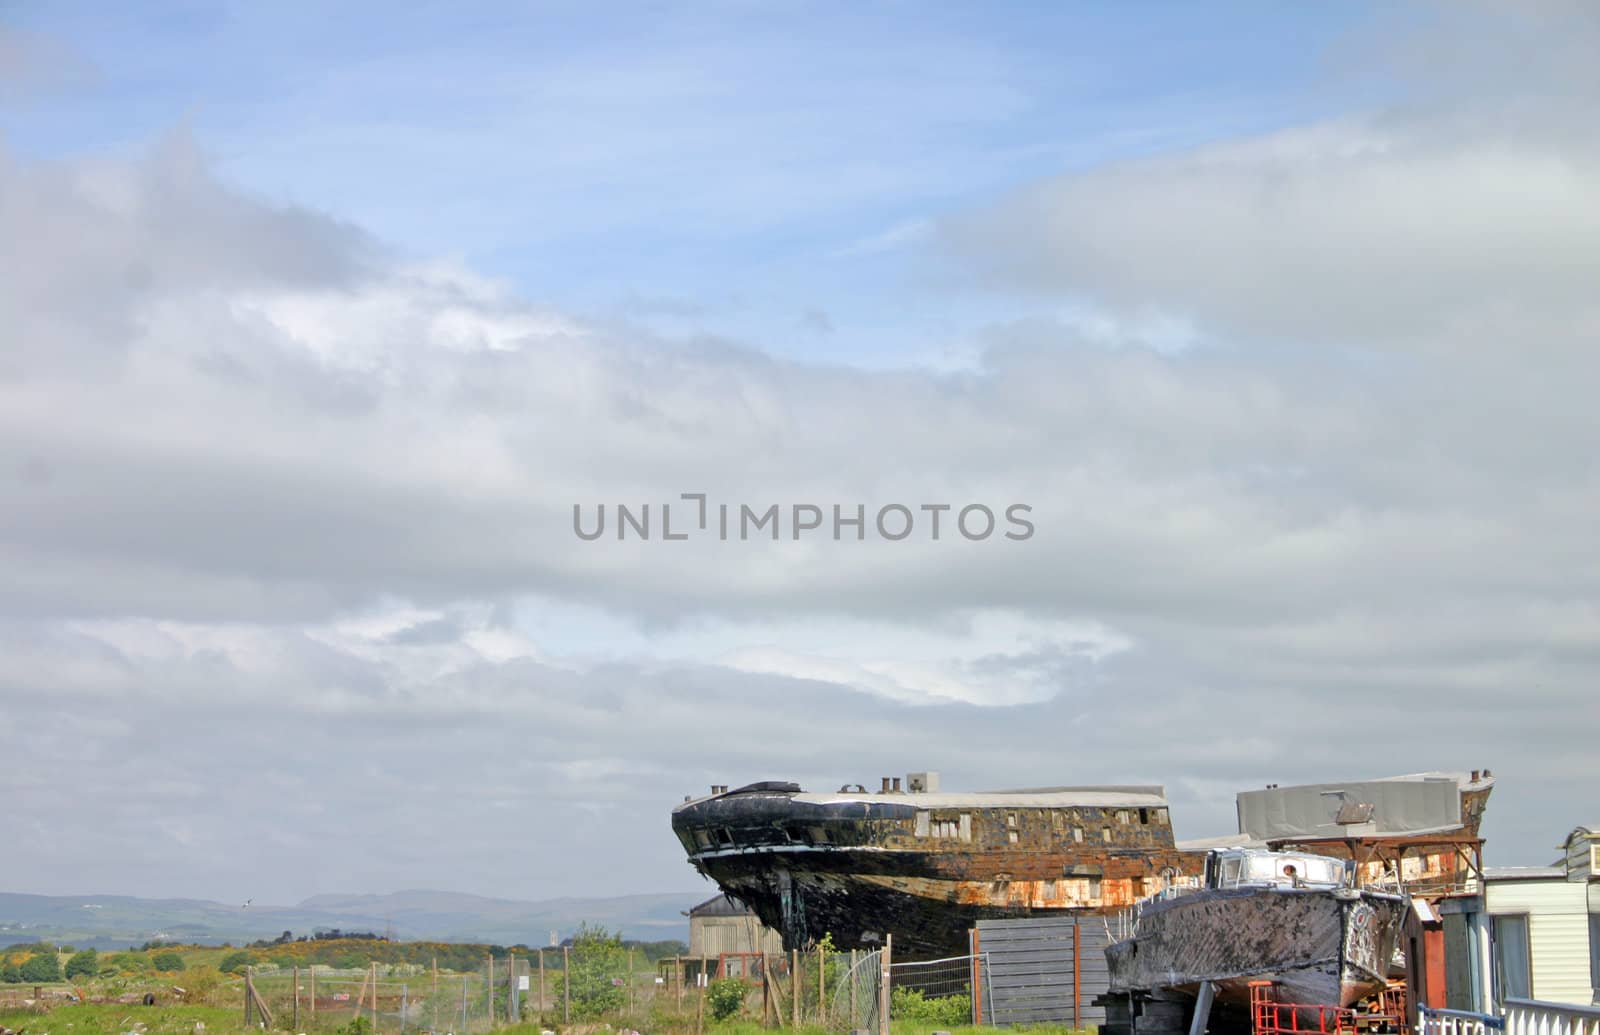 Old Ship Wrecks at Ayr Scotland by green308